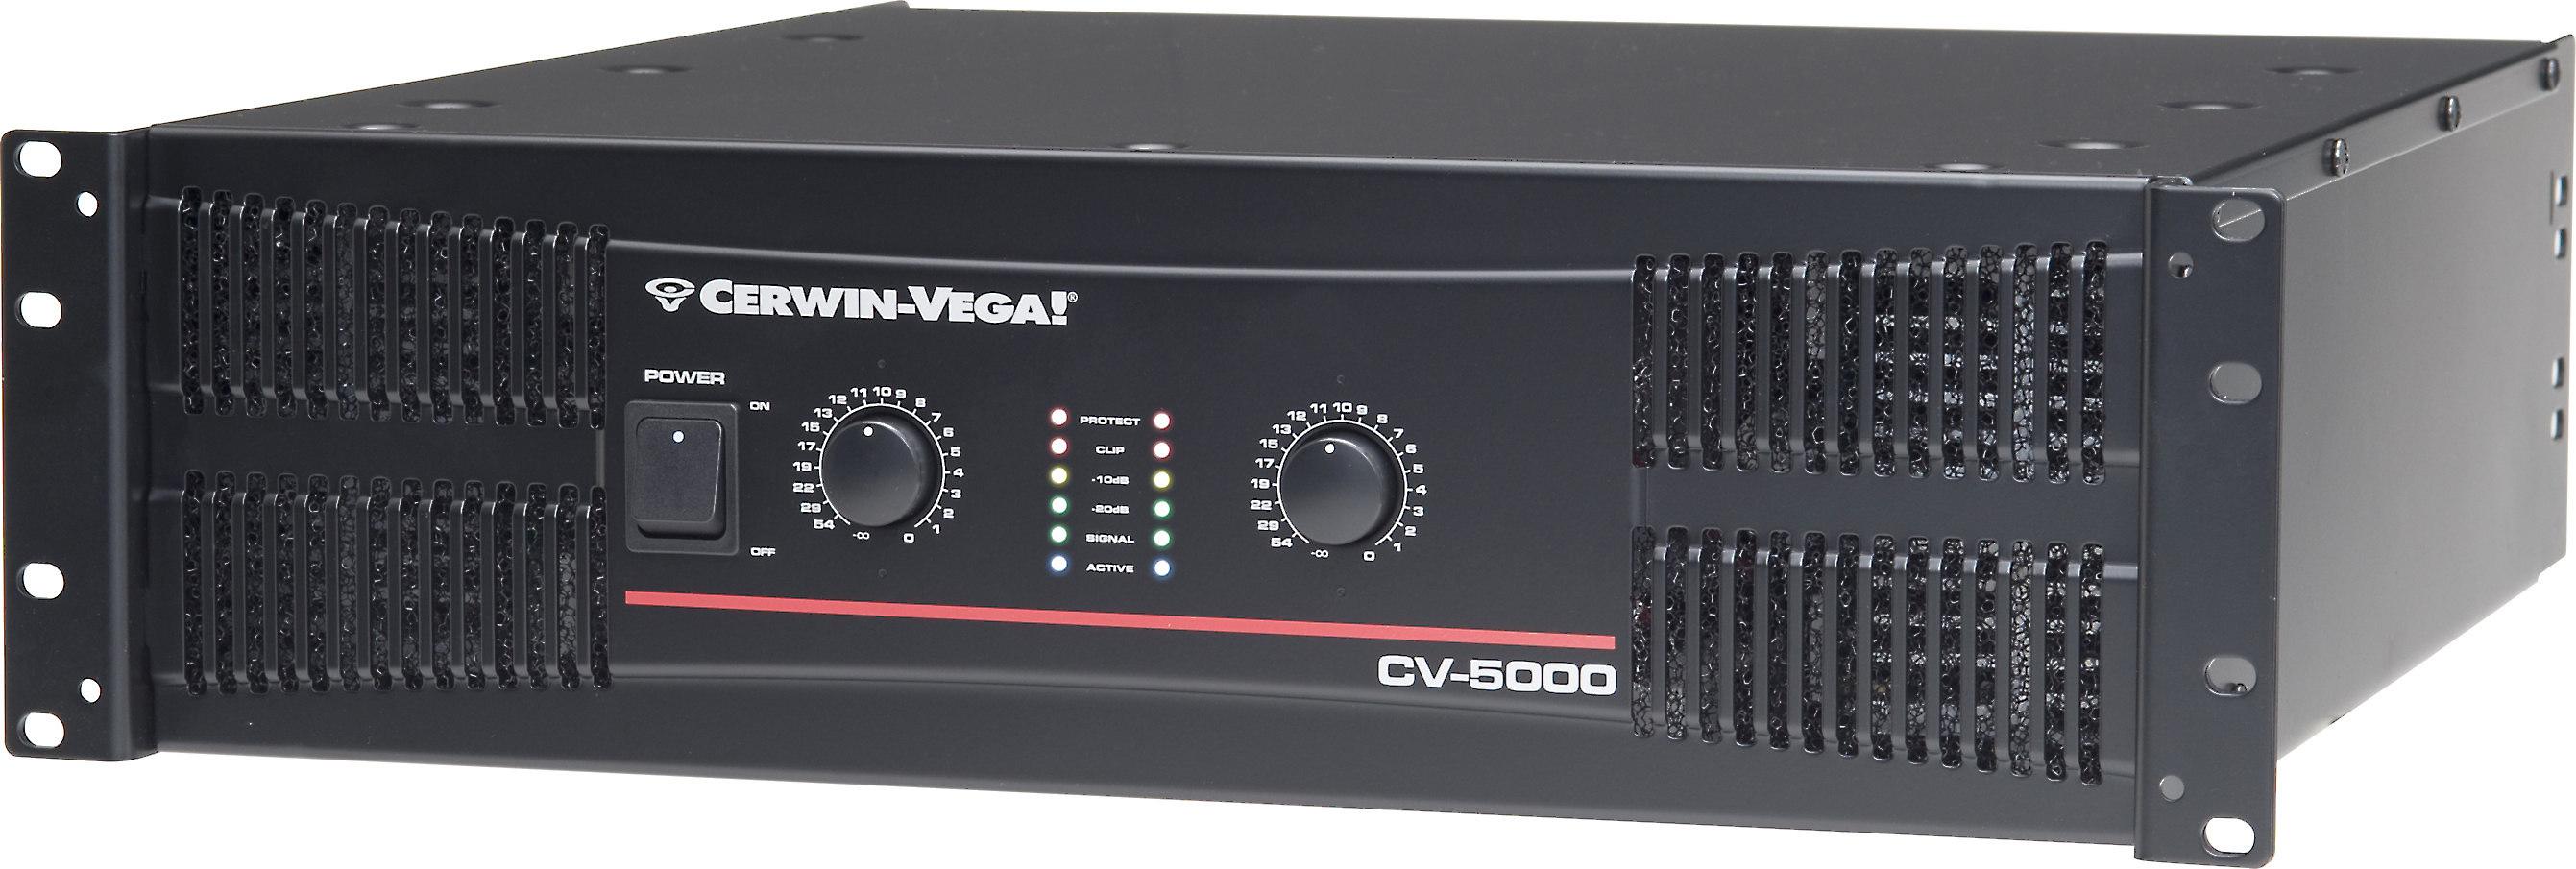 Cerwin-Vega - Amplificador Mod.CV-5000_332